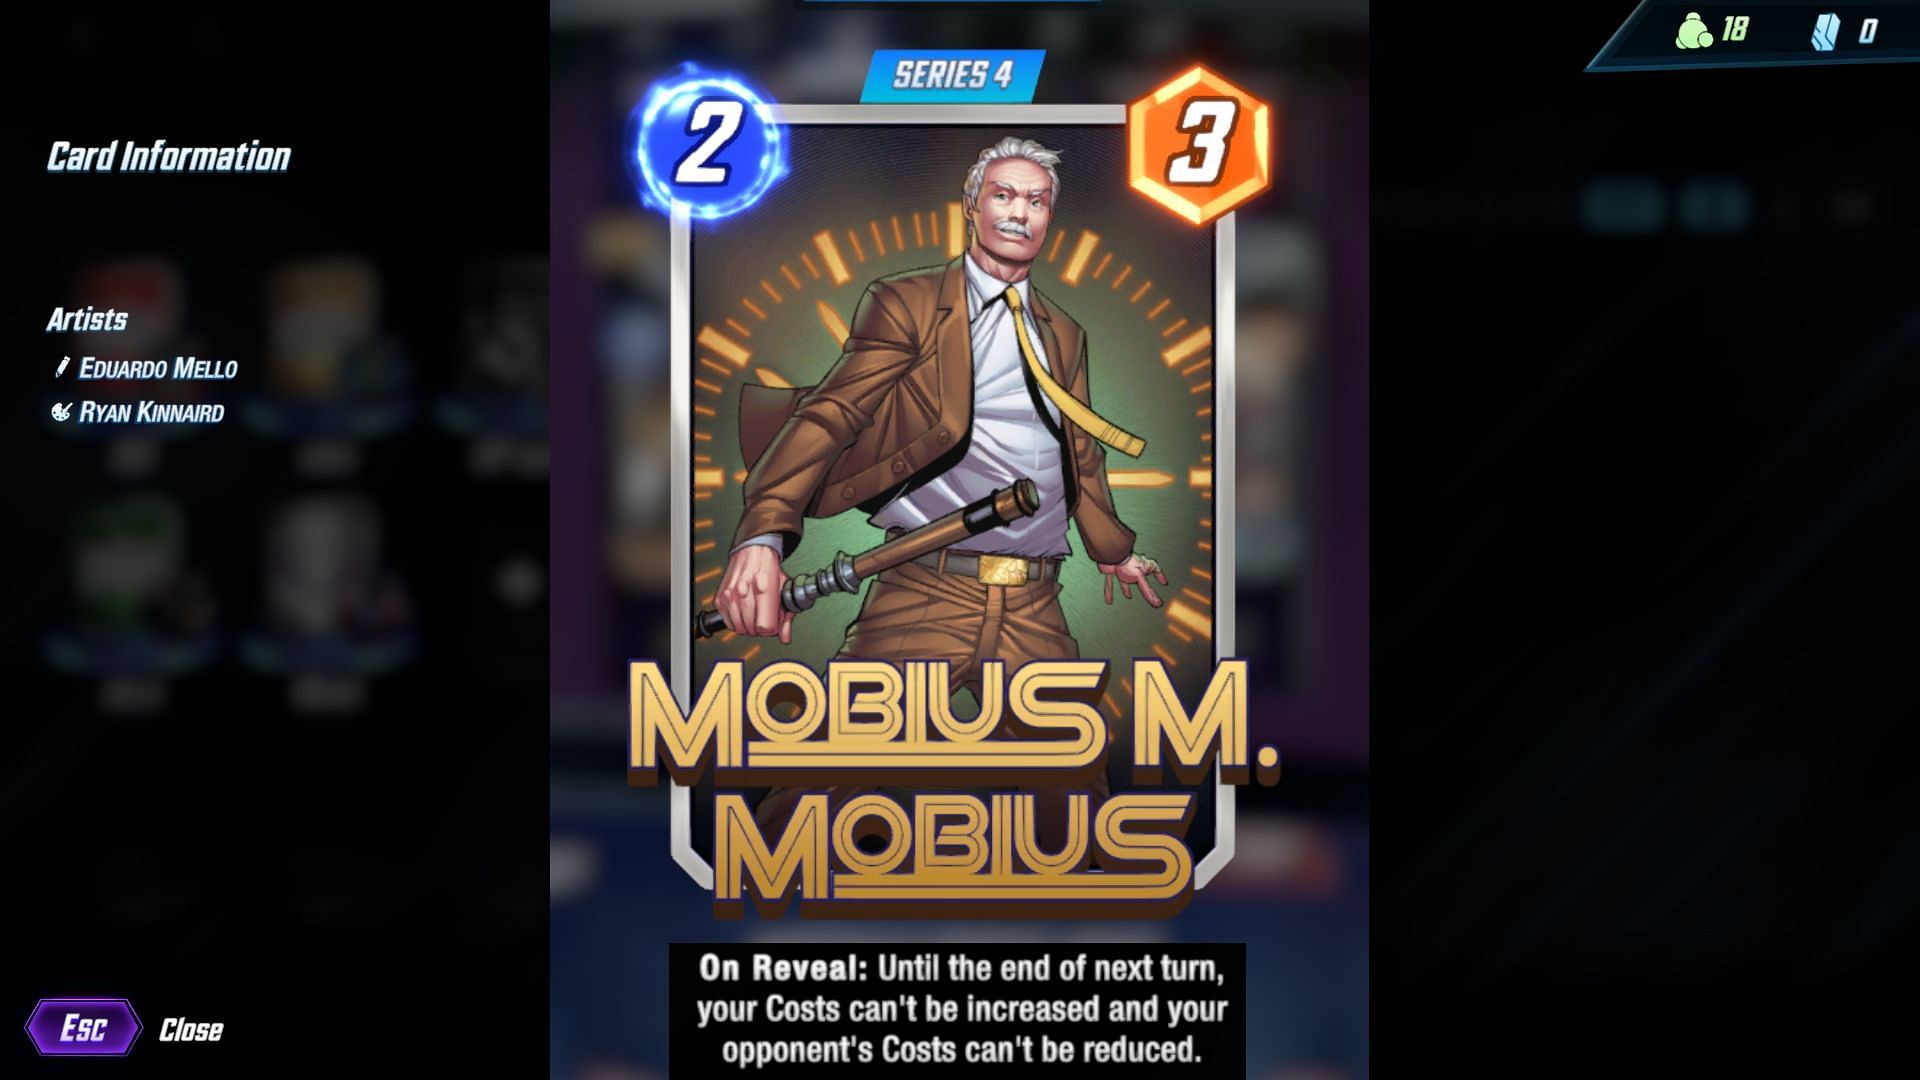 Mobius M. Mobius after October 31 update in Marvel Snap (Image via Sportskeeda/Marvel Snap)